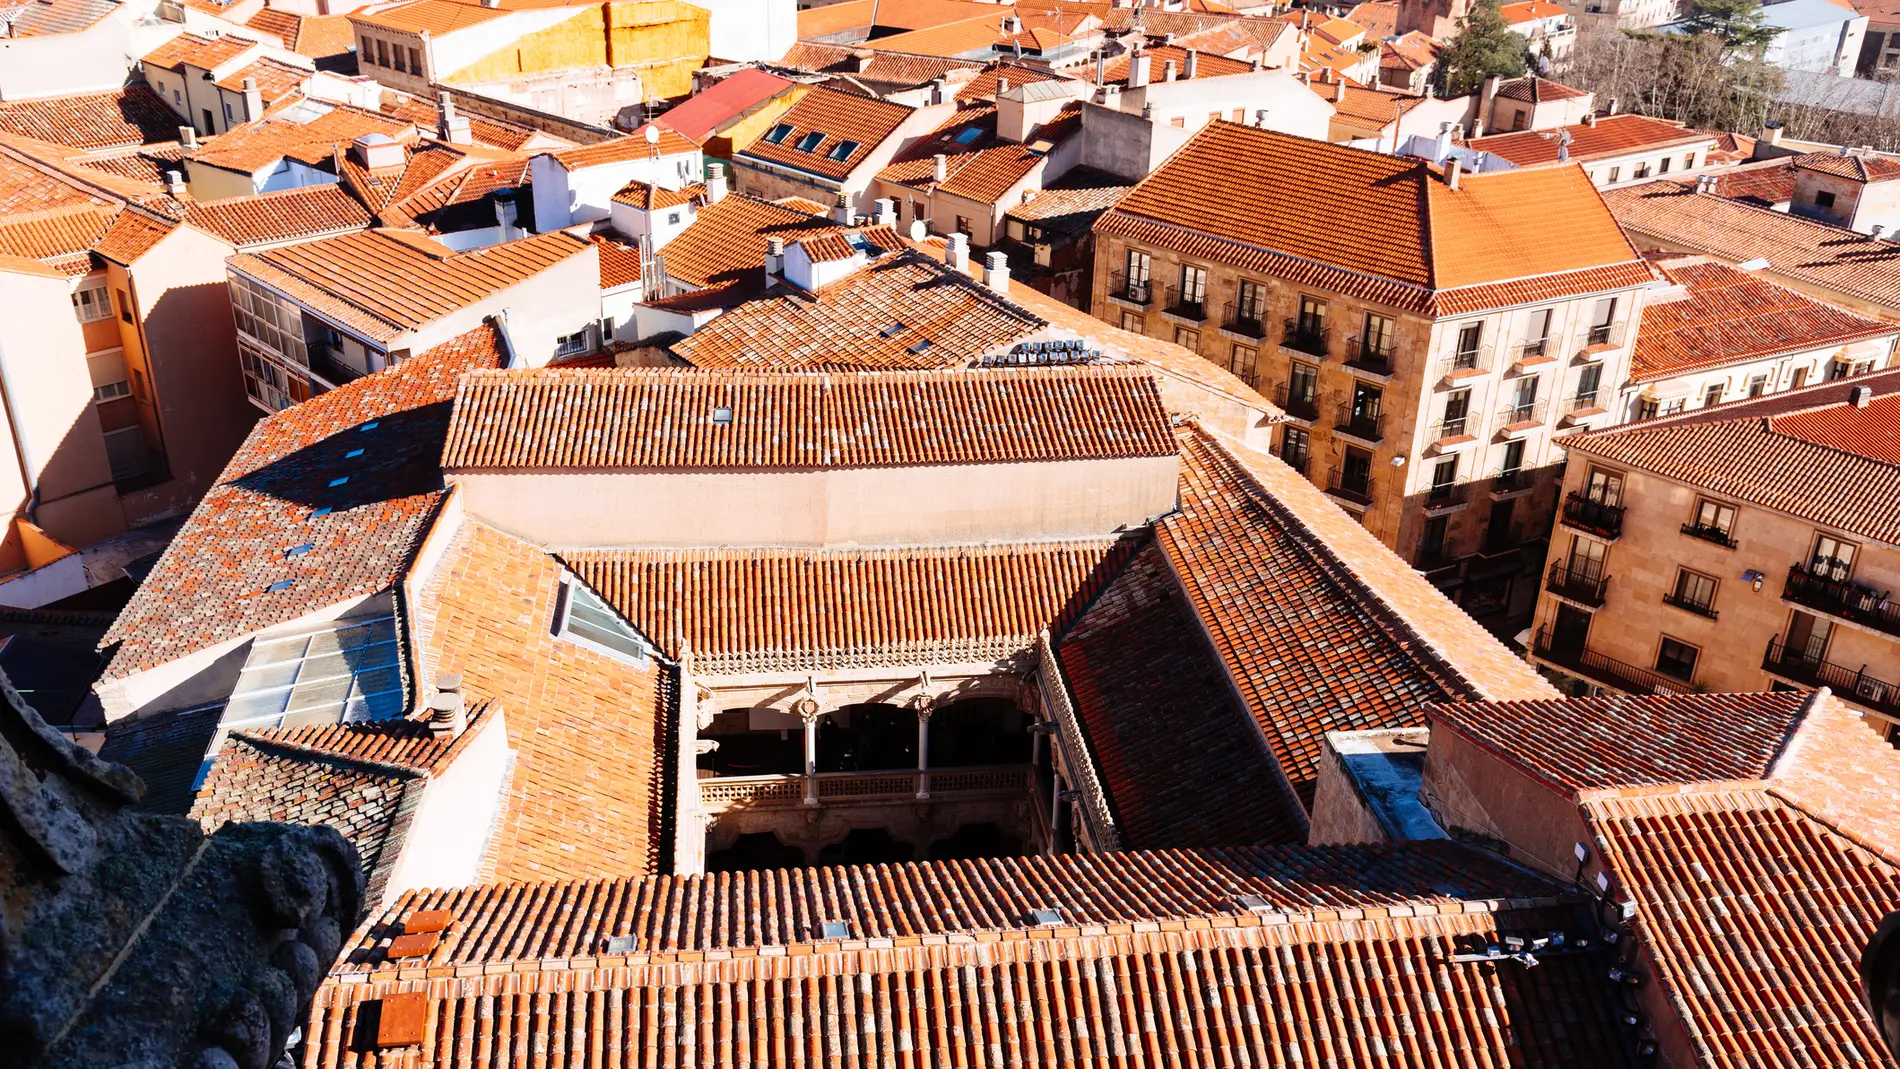 Casa de las Conchas en Salamanca